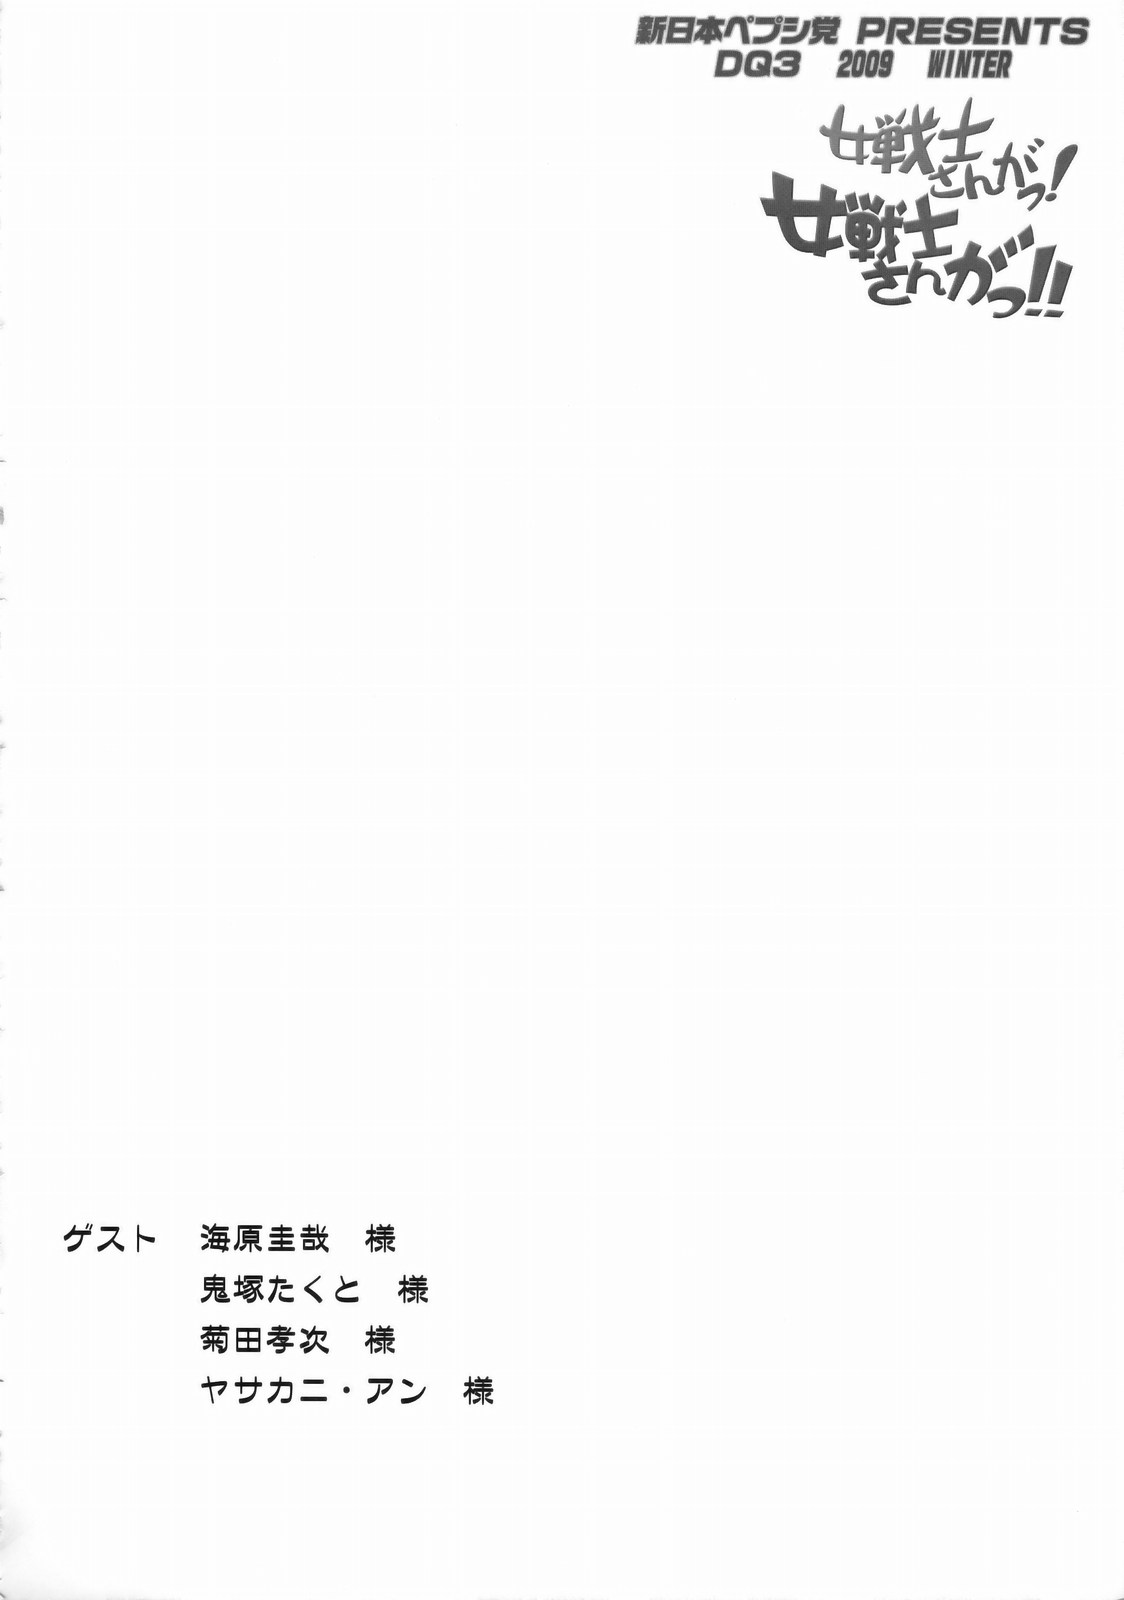 (C77) [新日本ペプシ党 (さんぢぇるまん・猿)] 女戦士さんがっ！女戦士さんがっ！！ Ver, 0.95 (ドラゴンクエストIII)